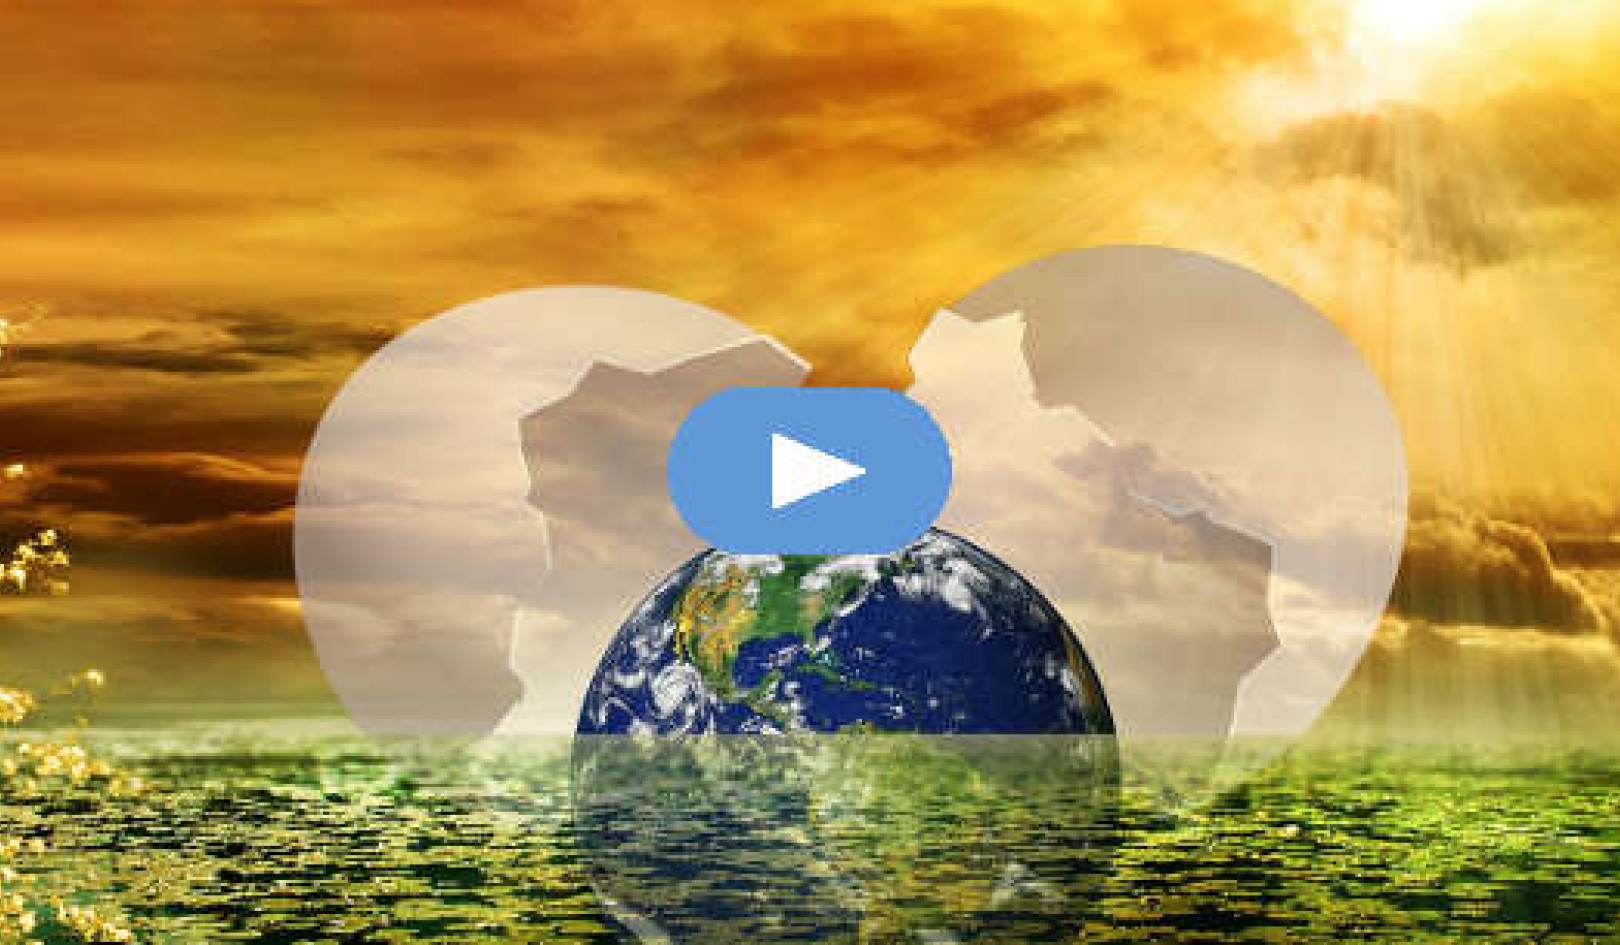 Kommer i balance i verdenernes forandringer (video)